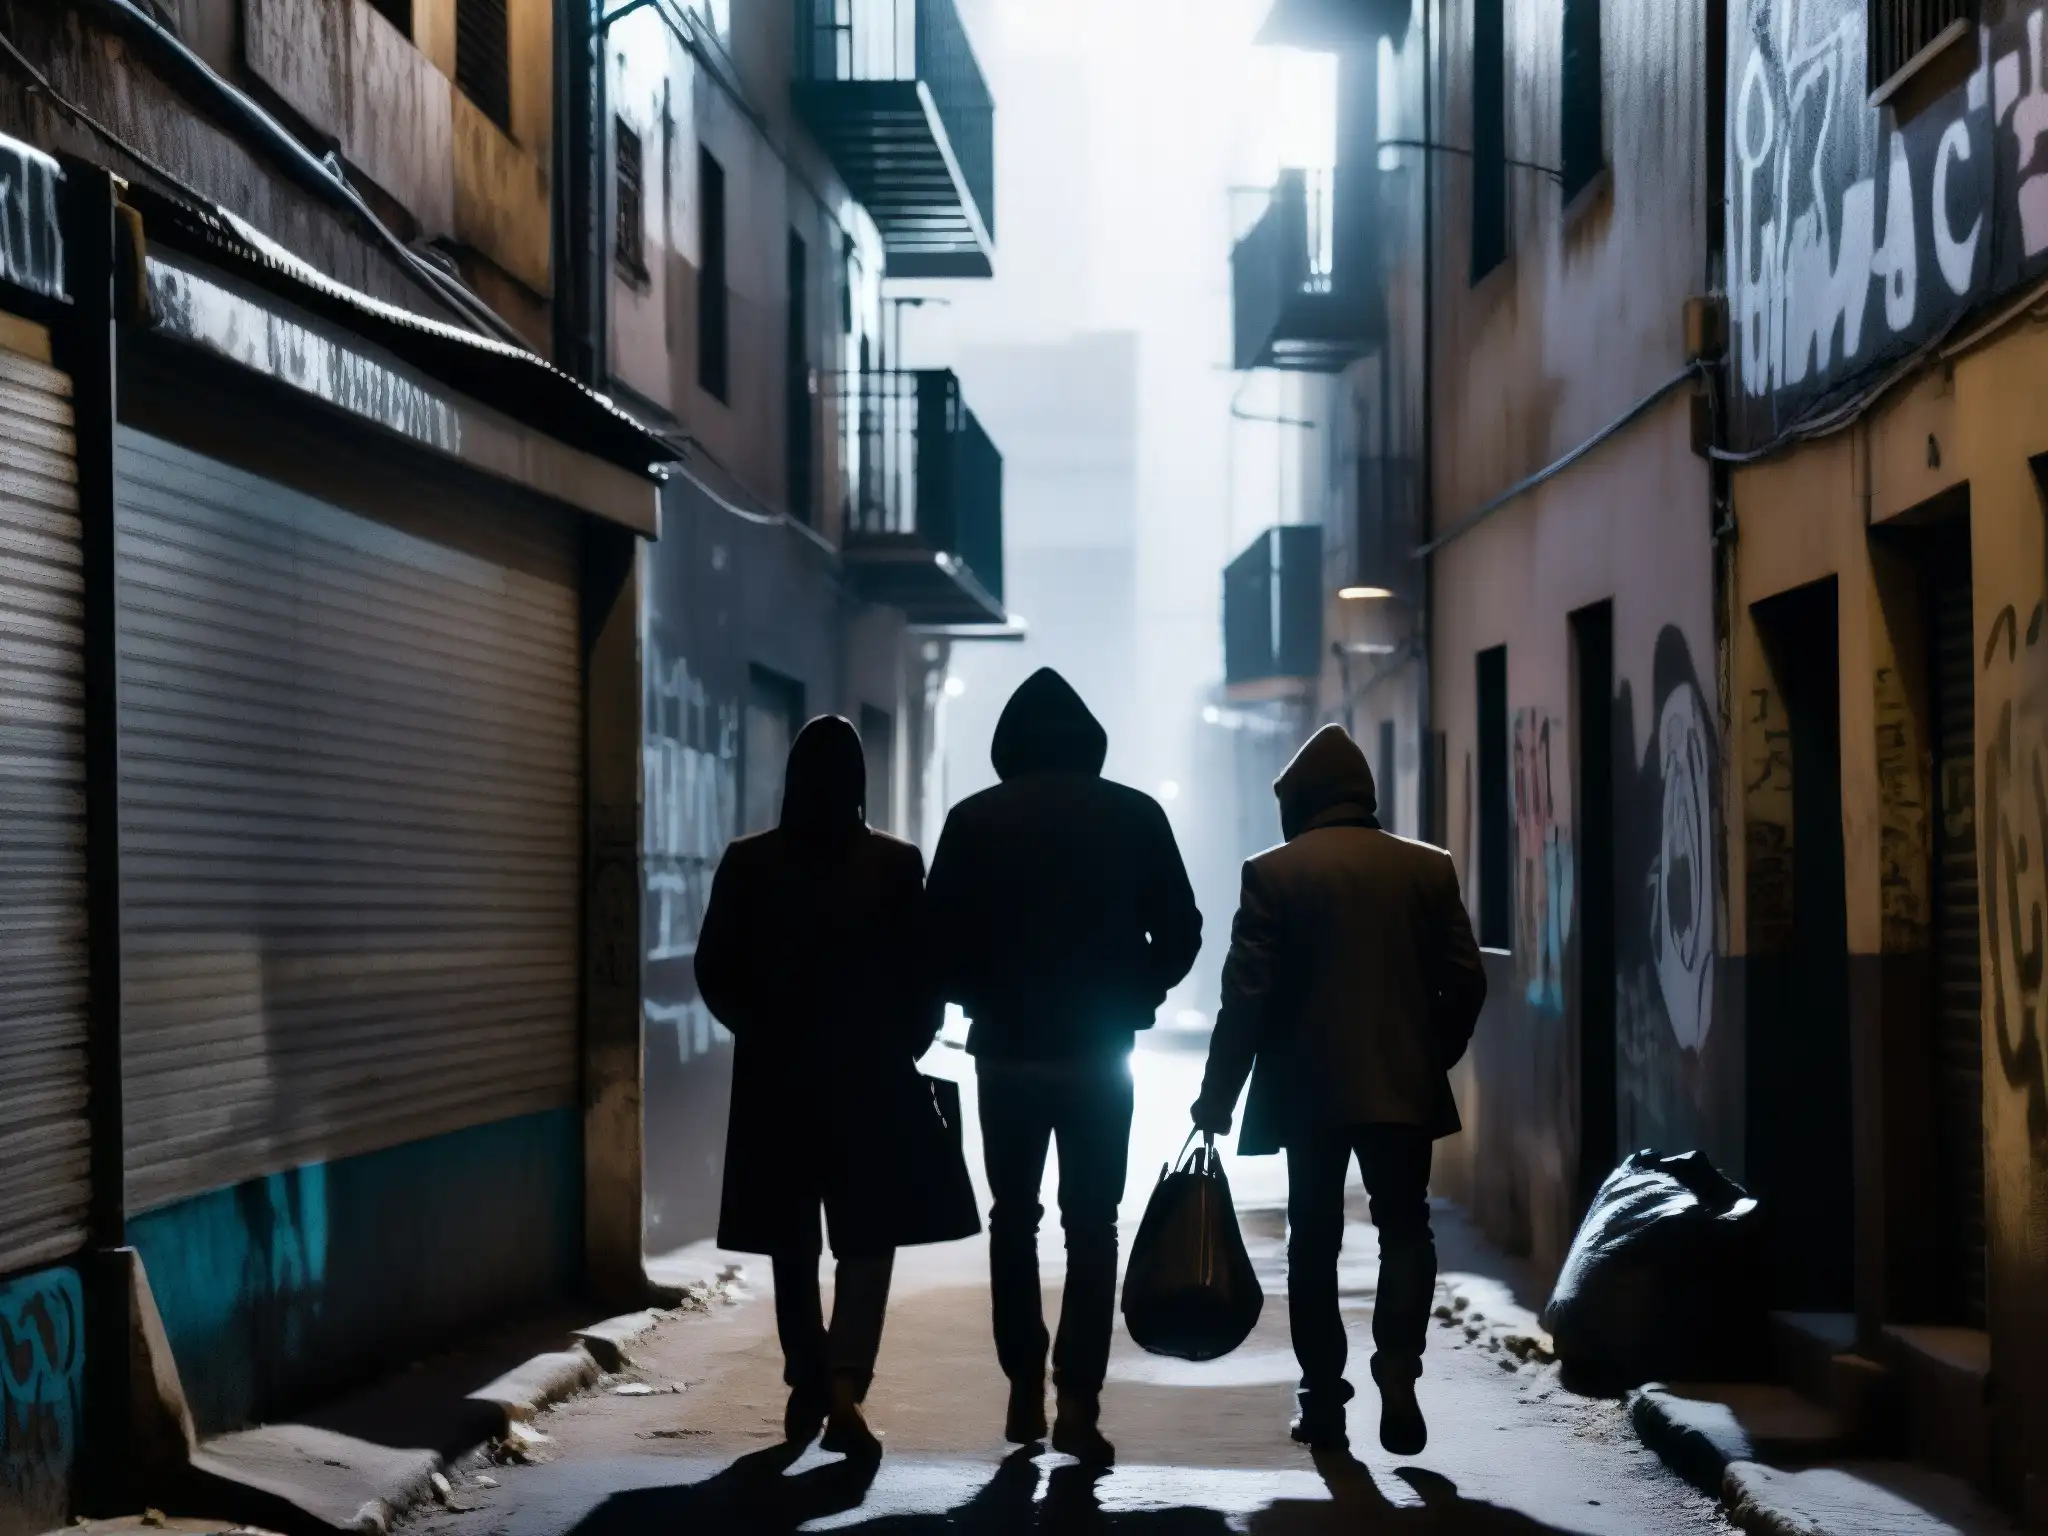 En un oscuro callejón de una ciudad latinoamericana, figuras encapuchadas intercambian miradas y sujetan maletines